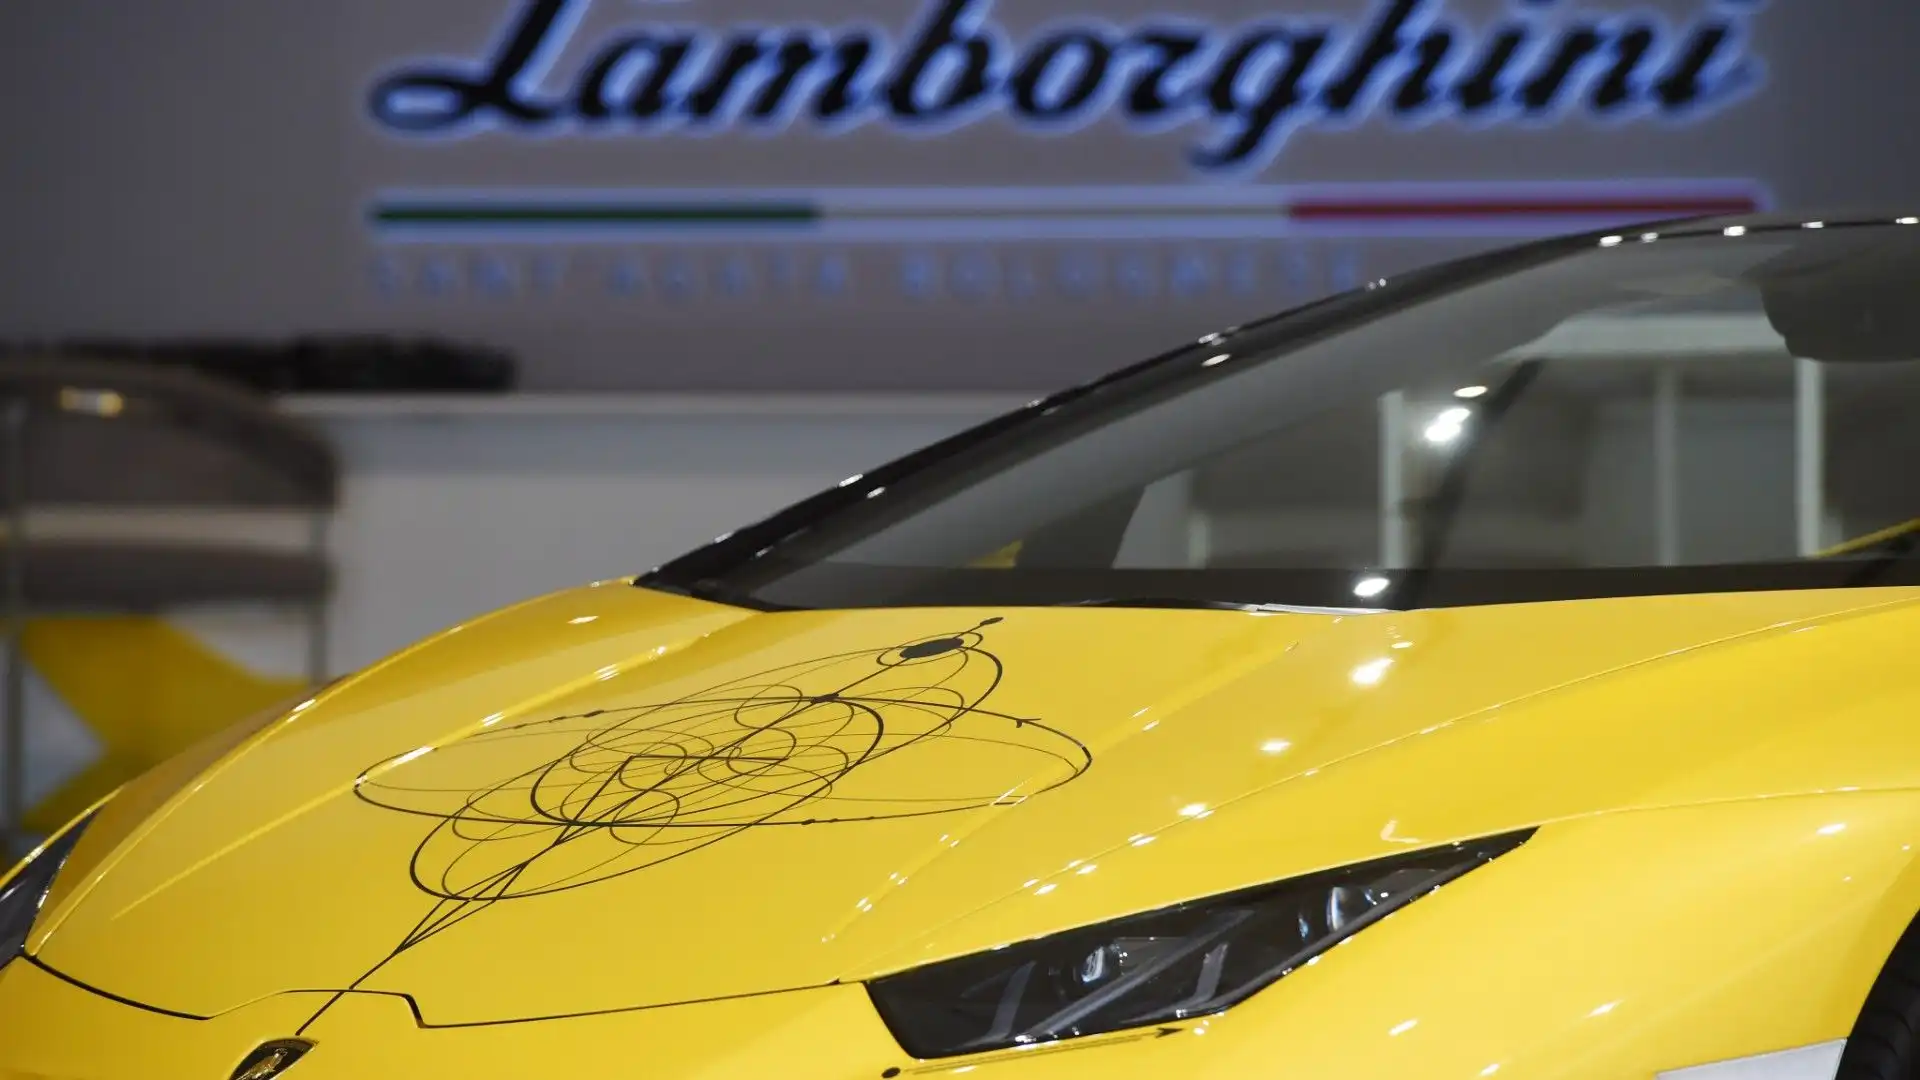 Dalla collaborazione tra Lamborghini e Dr. Woo è nato questo capolavoro